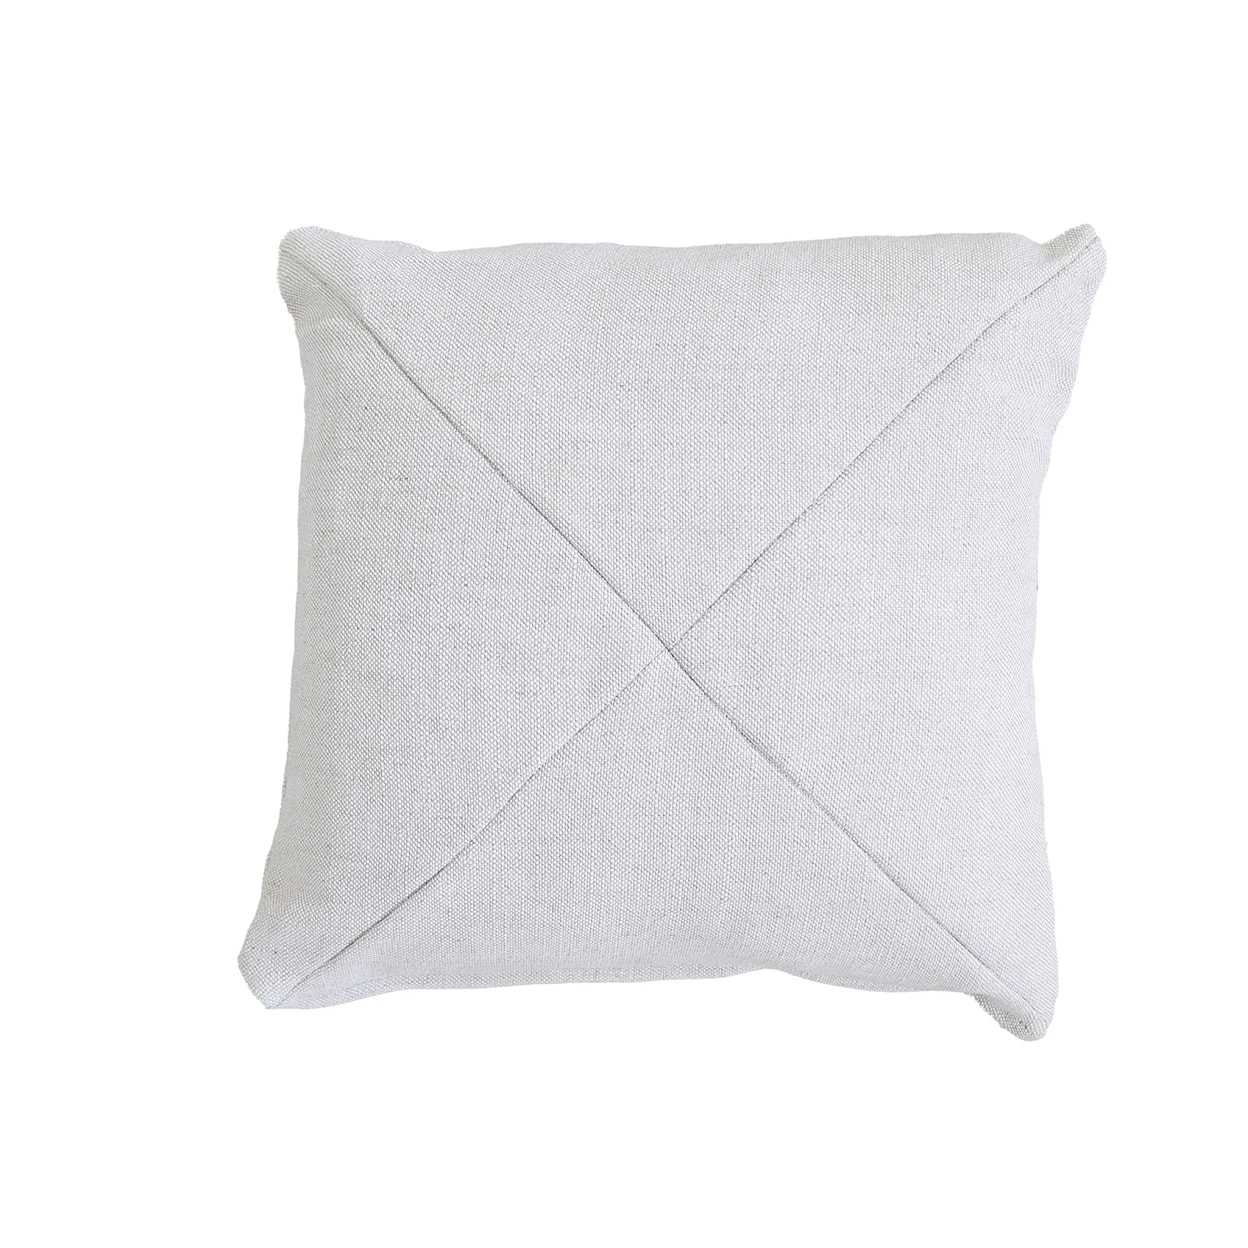 Universal Pillows 20 x 20 Miter Cut Toss Pillow